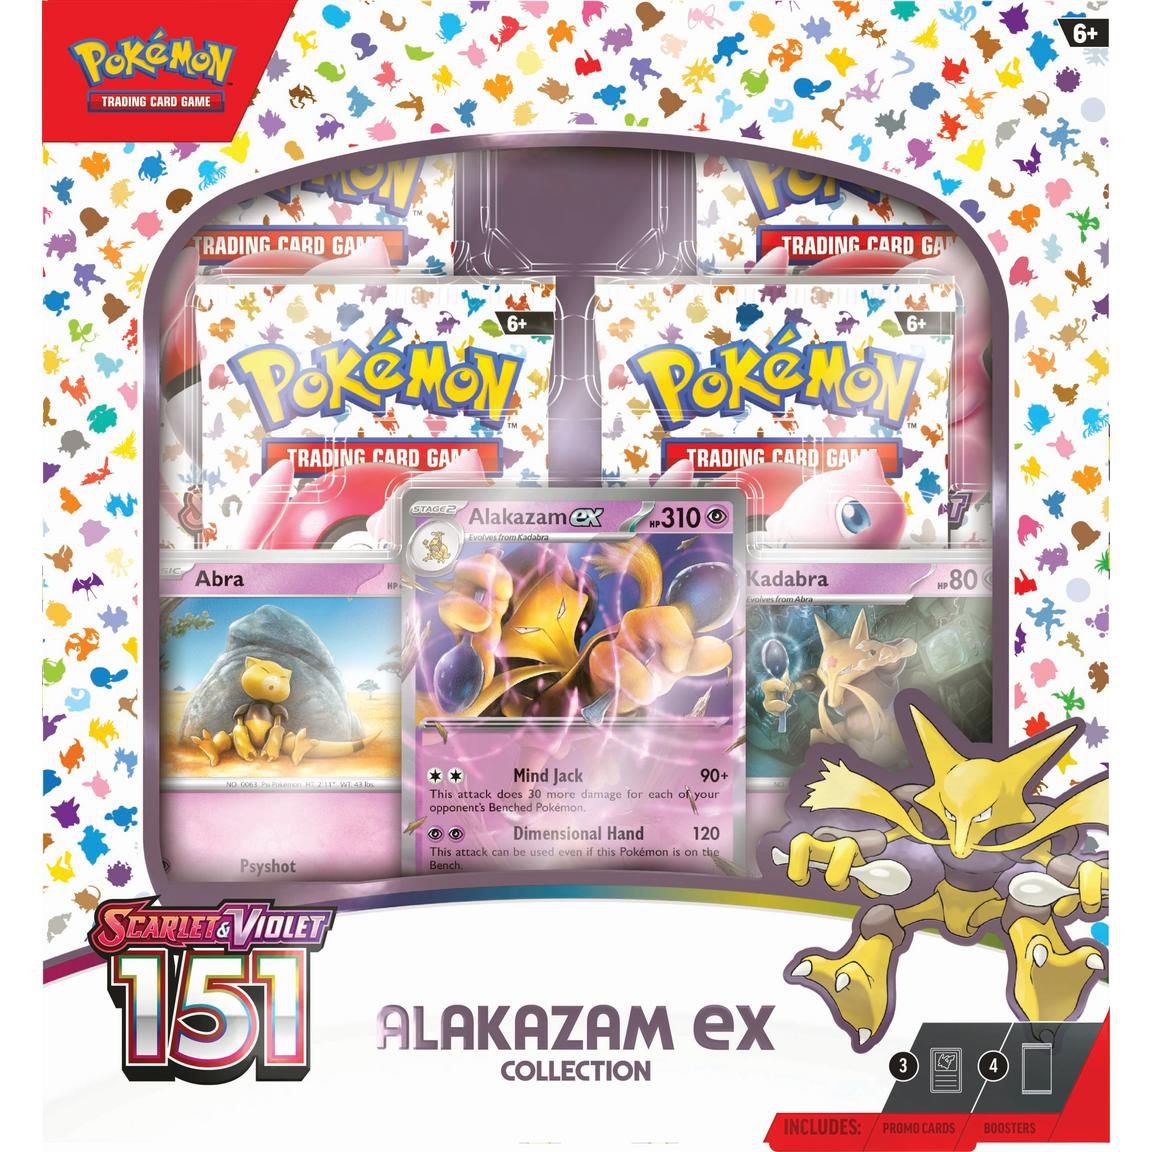 Boxen med Pokémon Scarlet och Violet: 151 TCG Alakazam ex-kollektion, som innehåller Alakazam evolution-linjen.